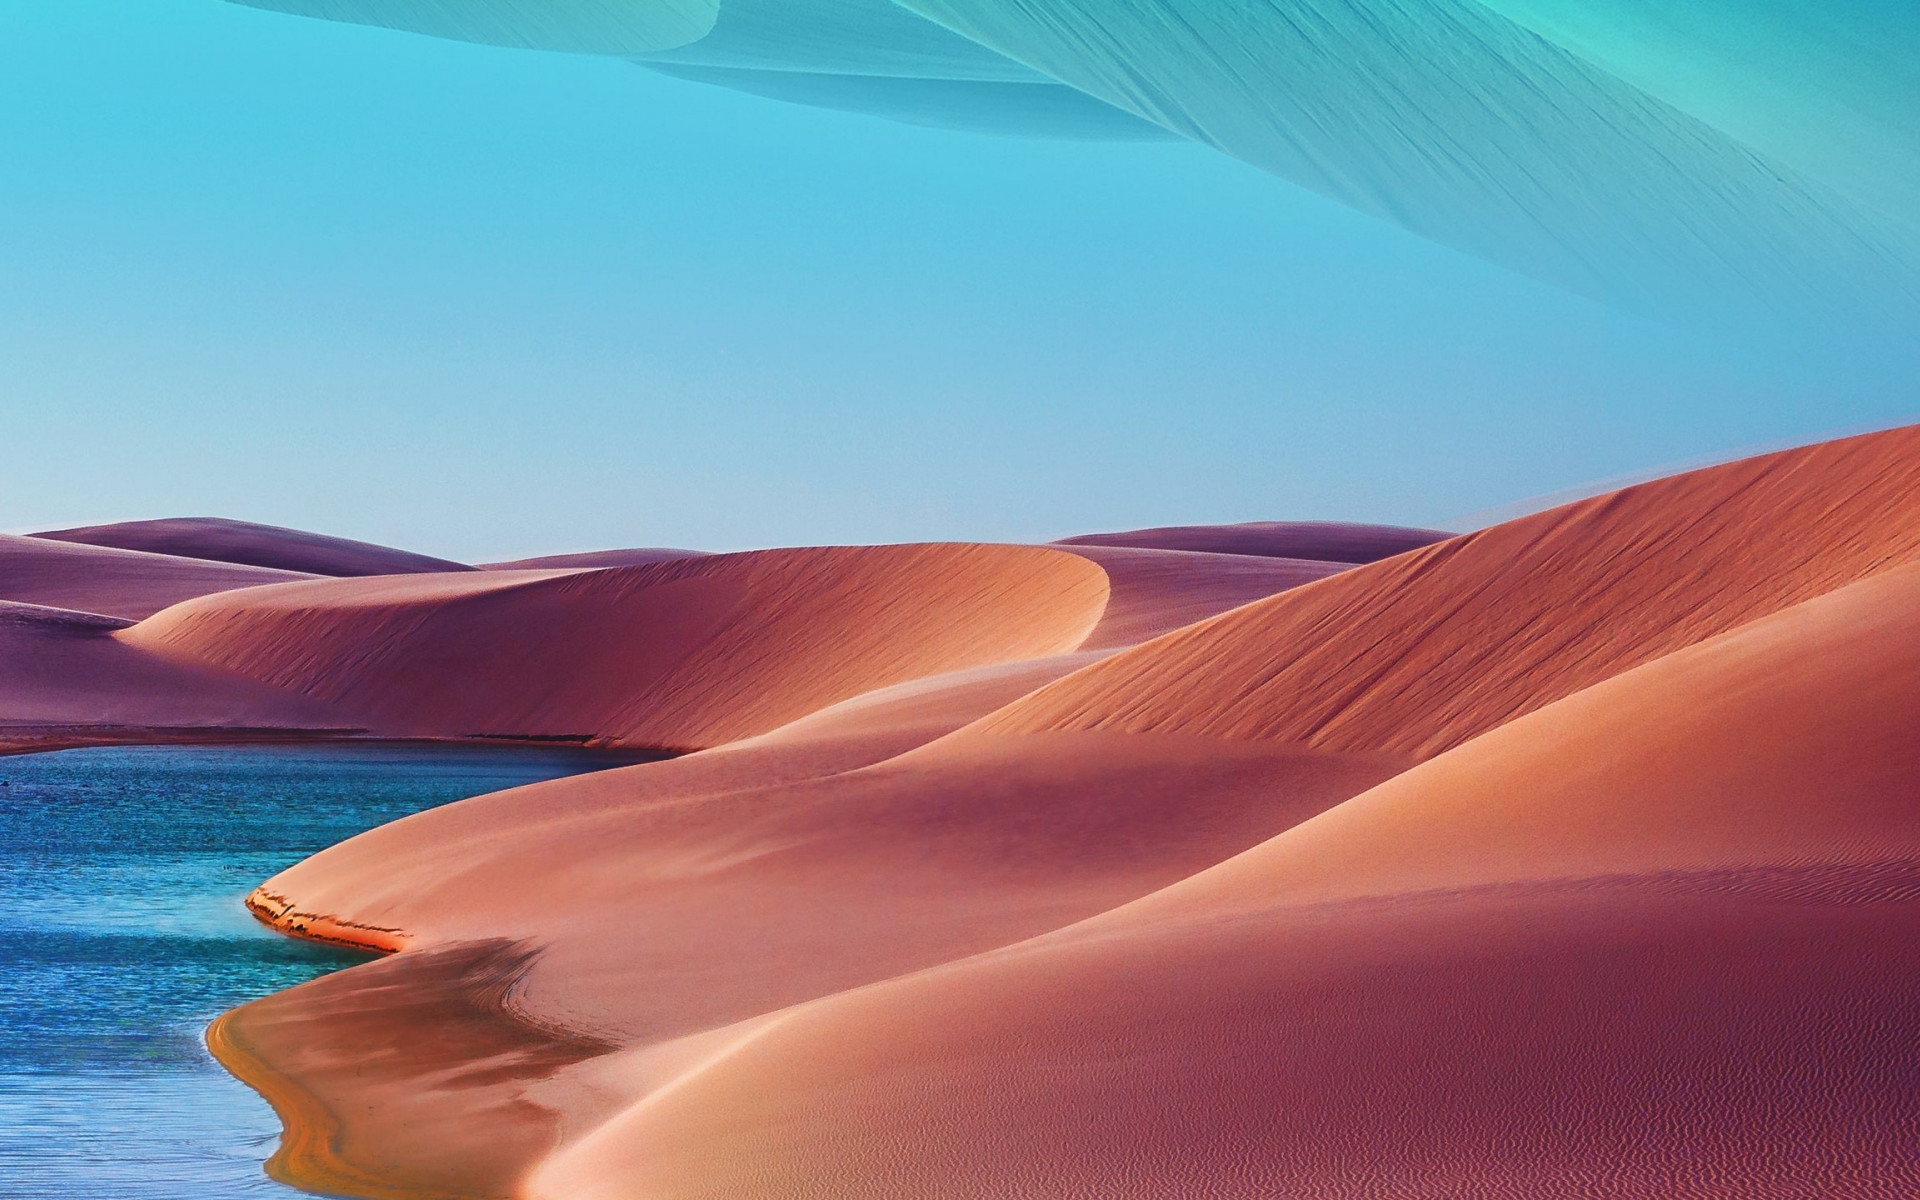 Desert Dunes, Lake, Blue Sky, Hot Day Wallpaper - 4k Uhd Desert Sunset - HD Wallpaper 